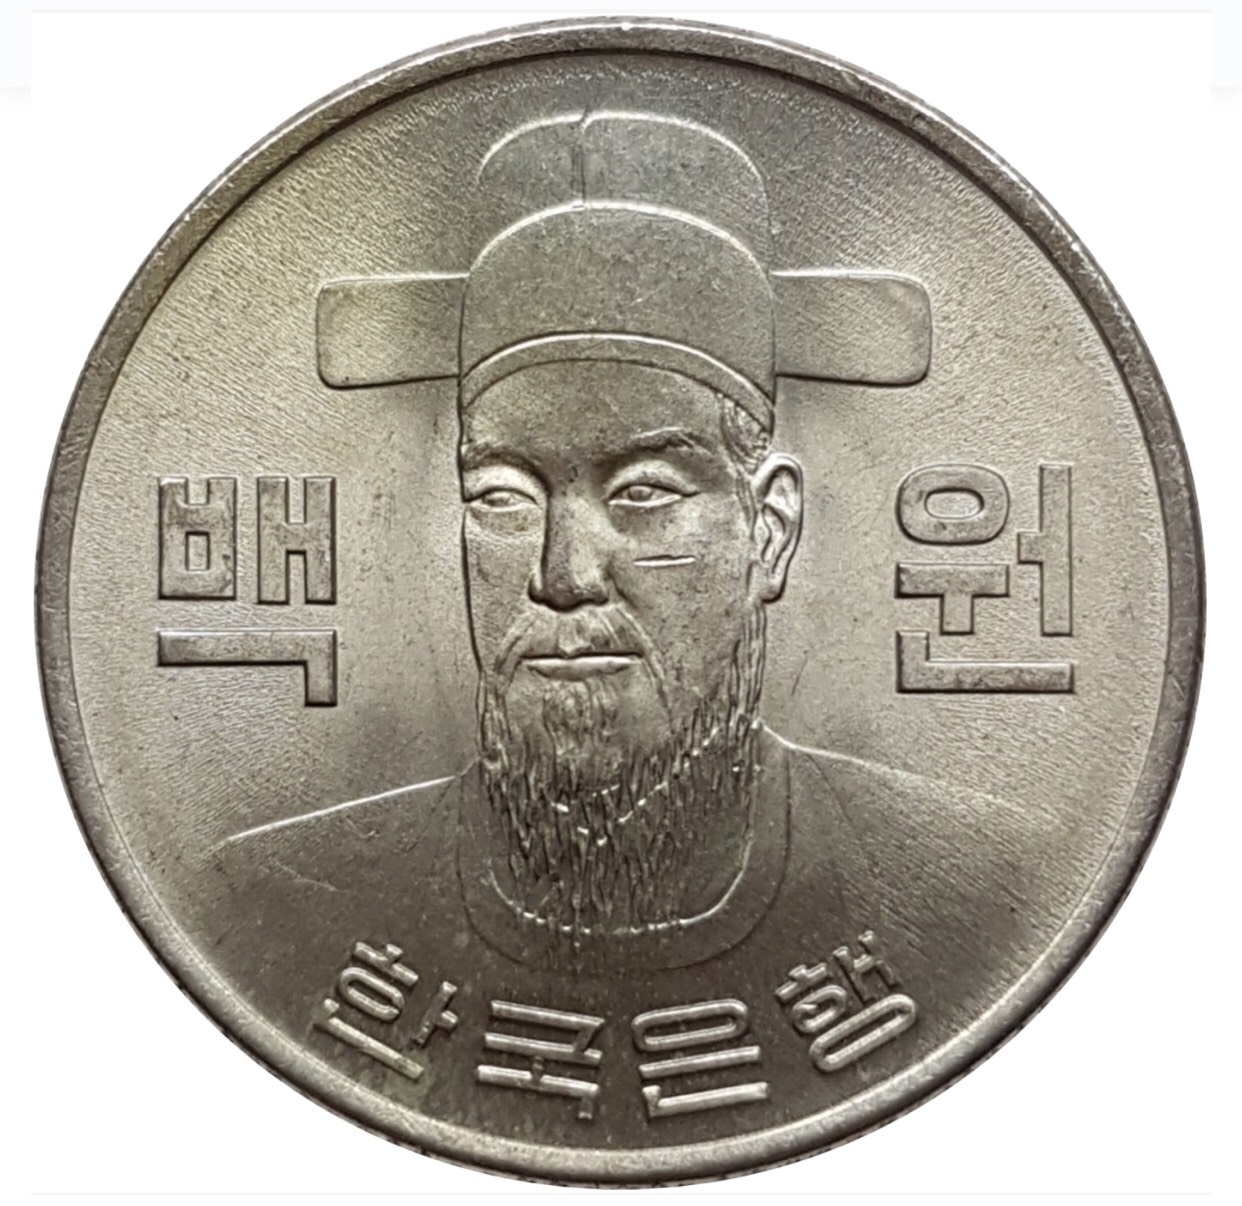 Đồng xu Hàn Quốc 100 won phiên bản cũ